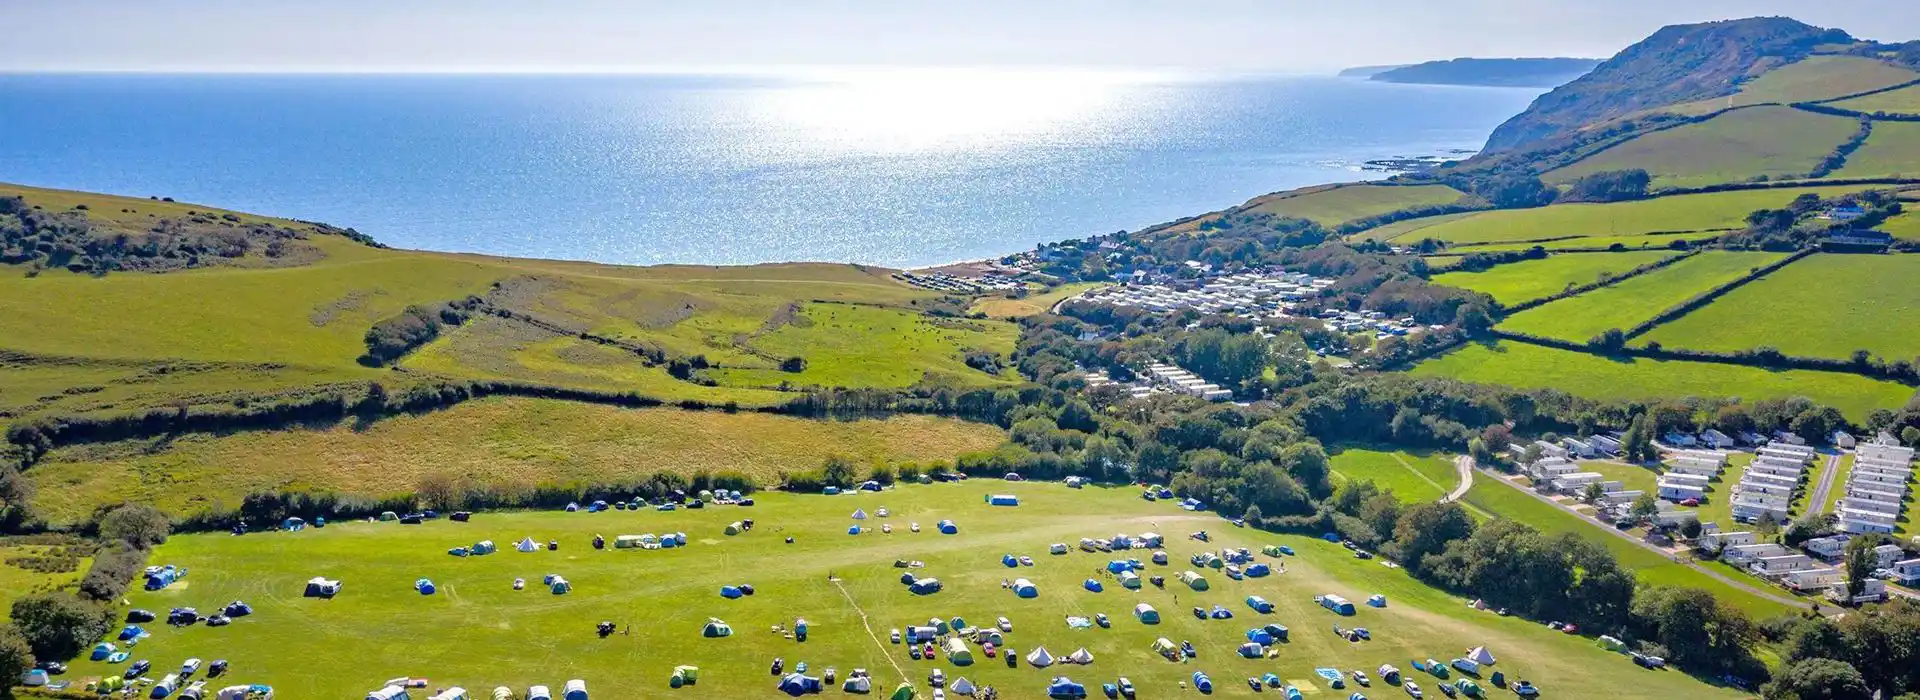 Campsites in South Dorset